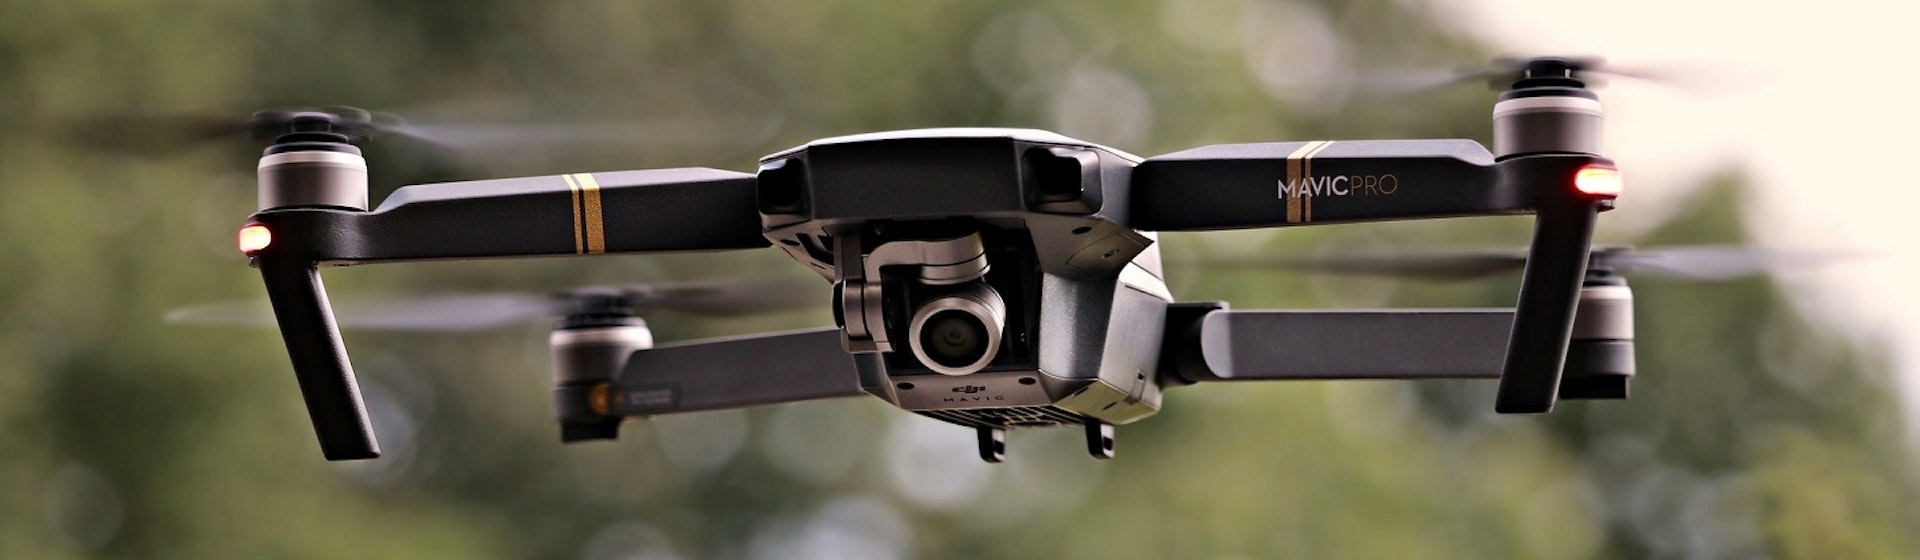 Descubre quién inventó los drones, la mente maestra del vehículo aéreo no tripulado